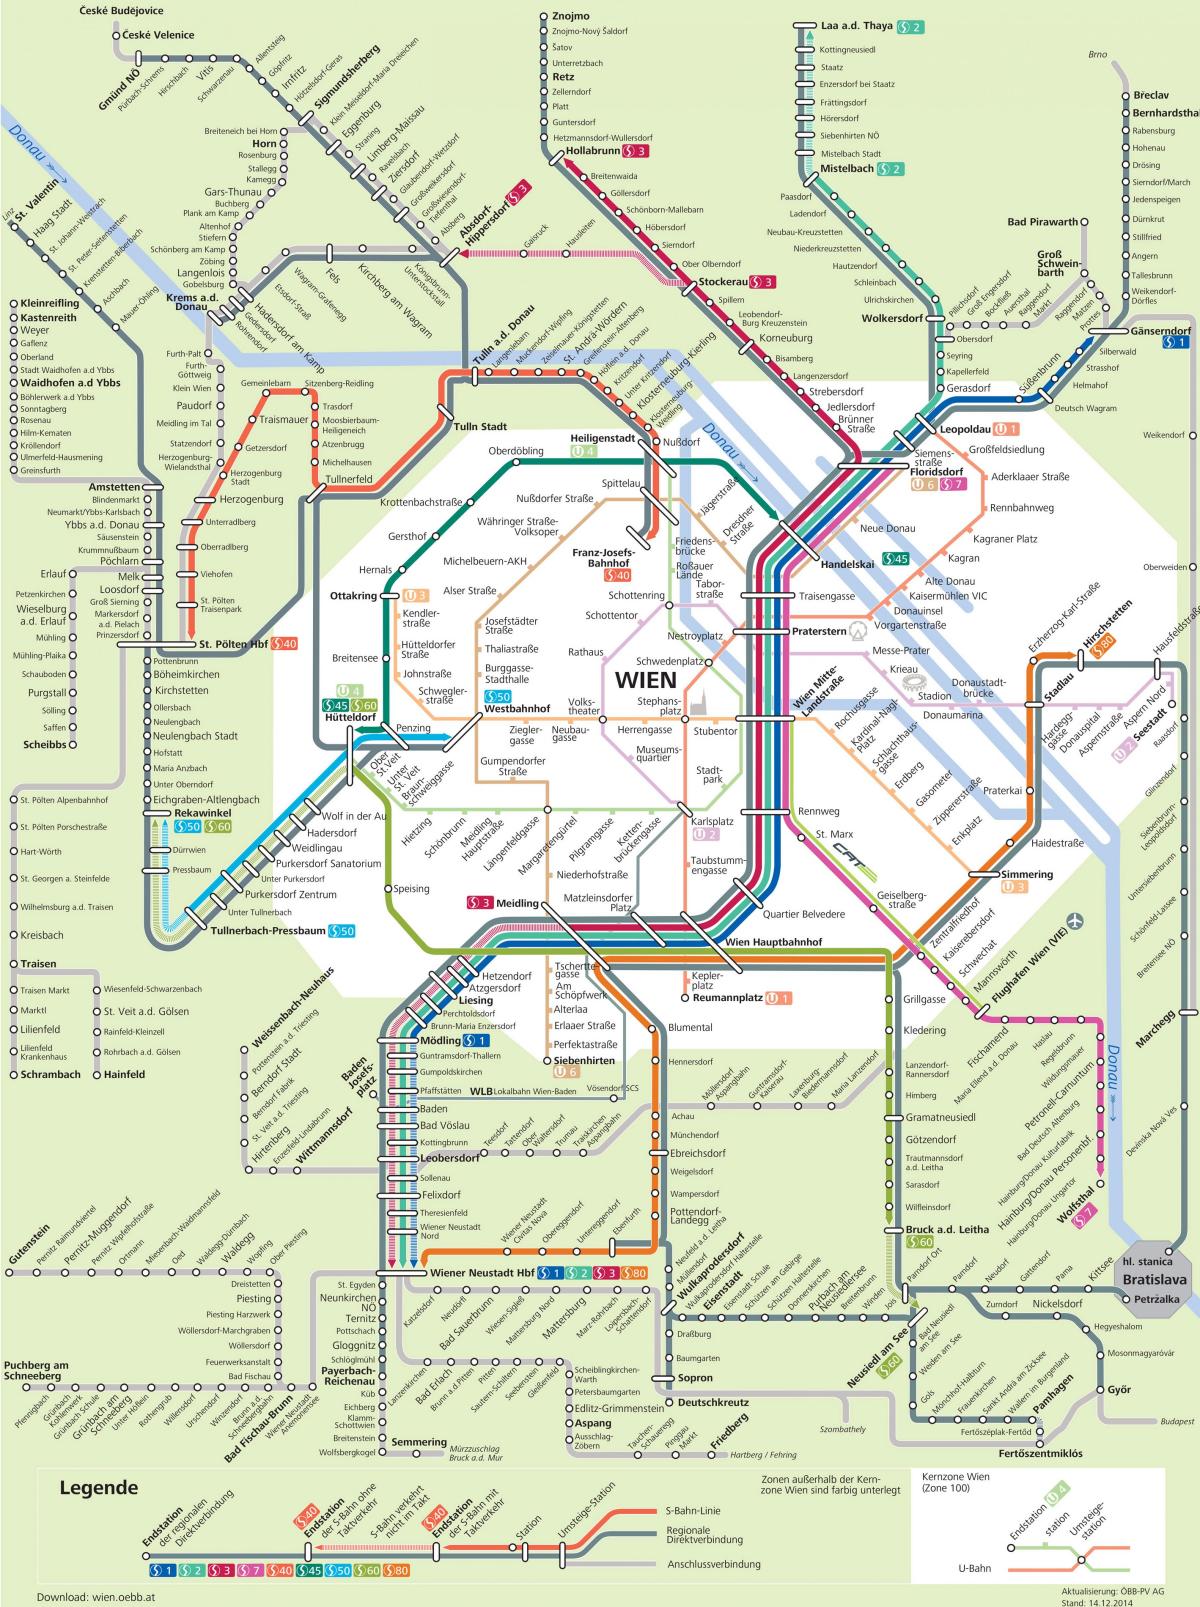 Карта Відень S7 маршруту